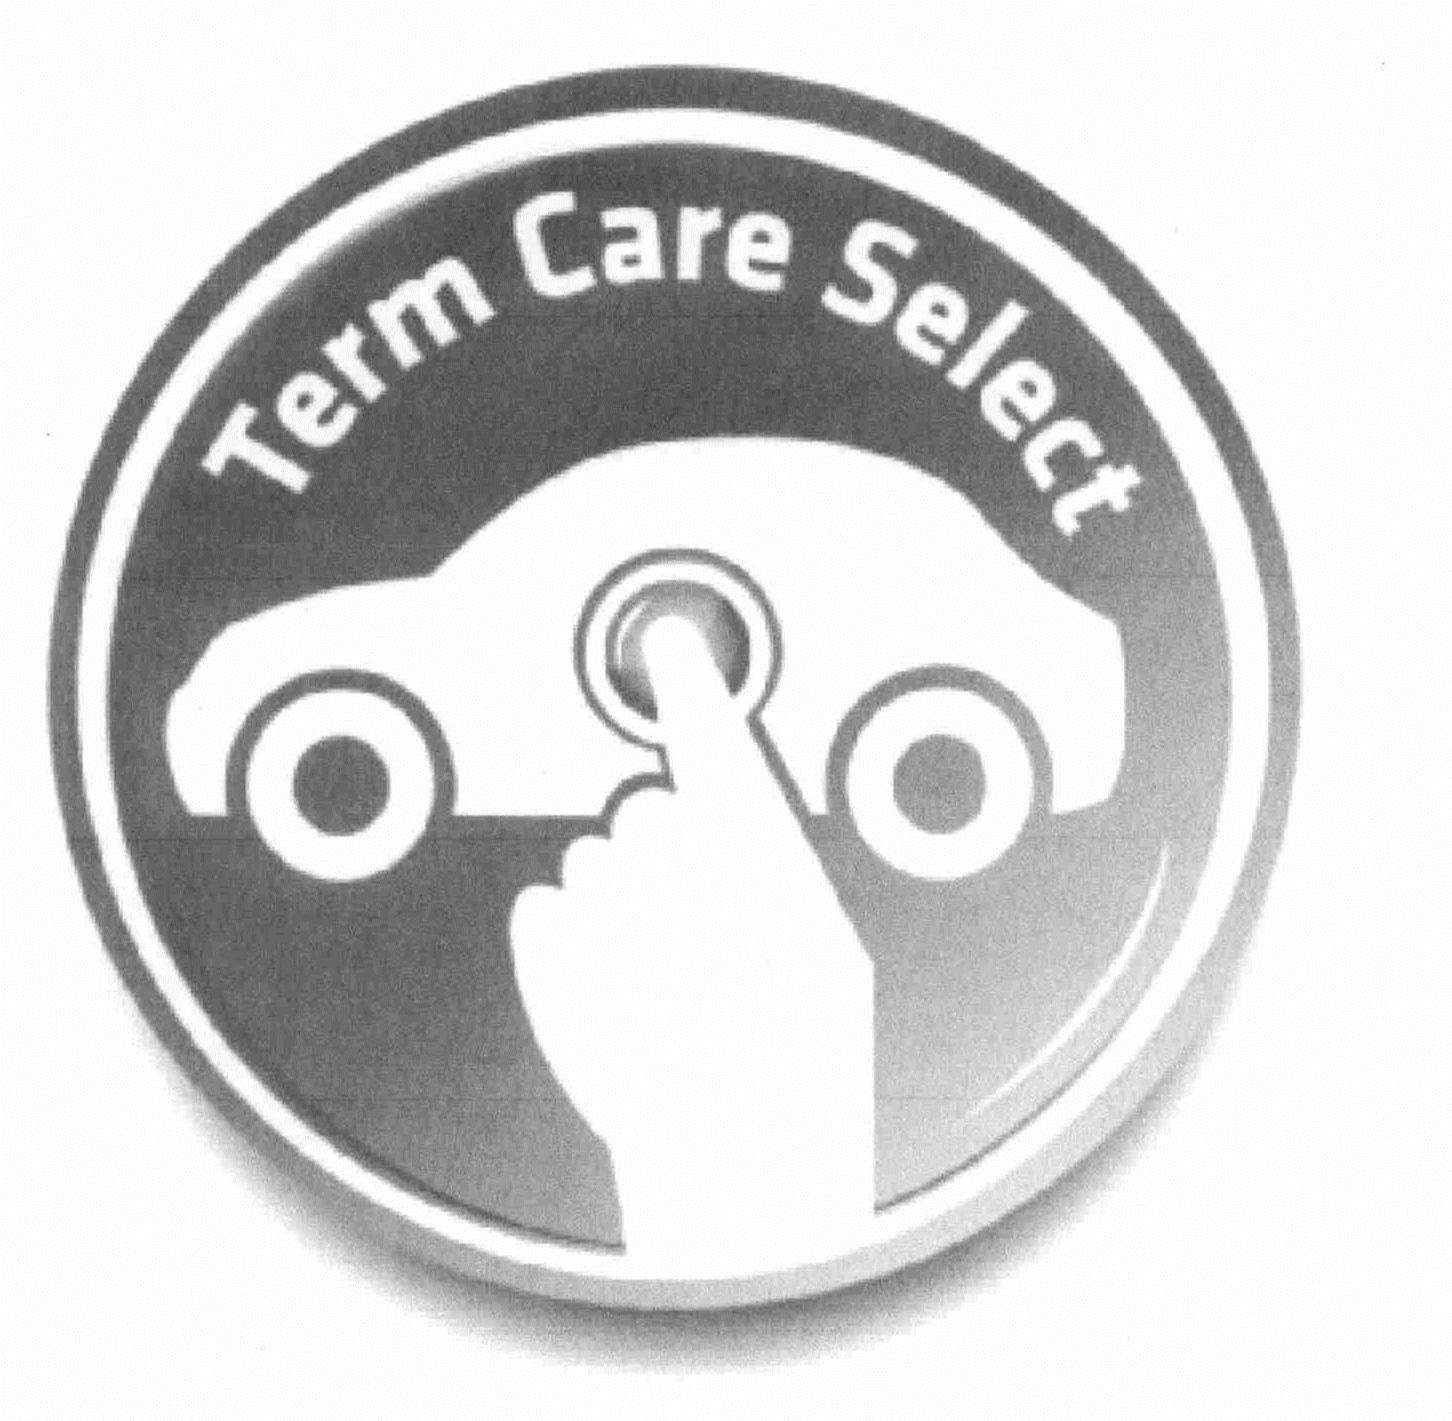 Trademark Logo TERM CARE SELECT